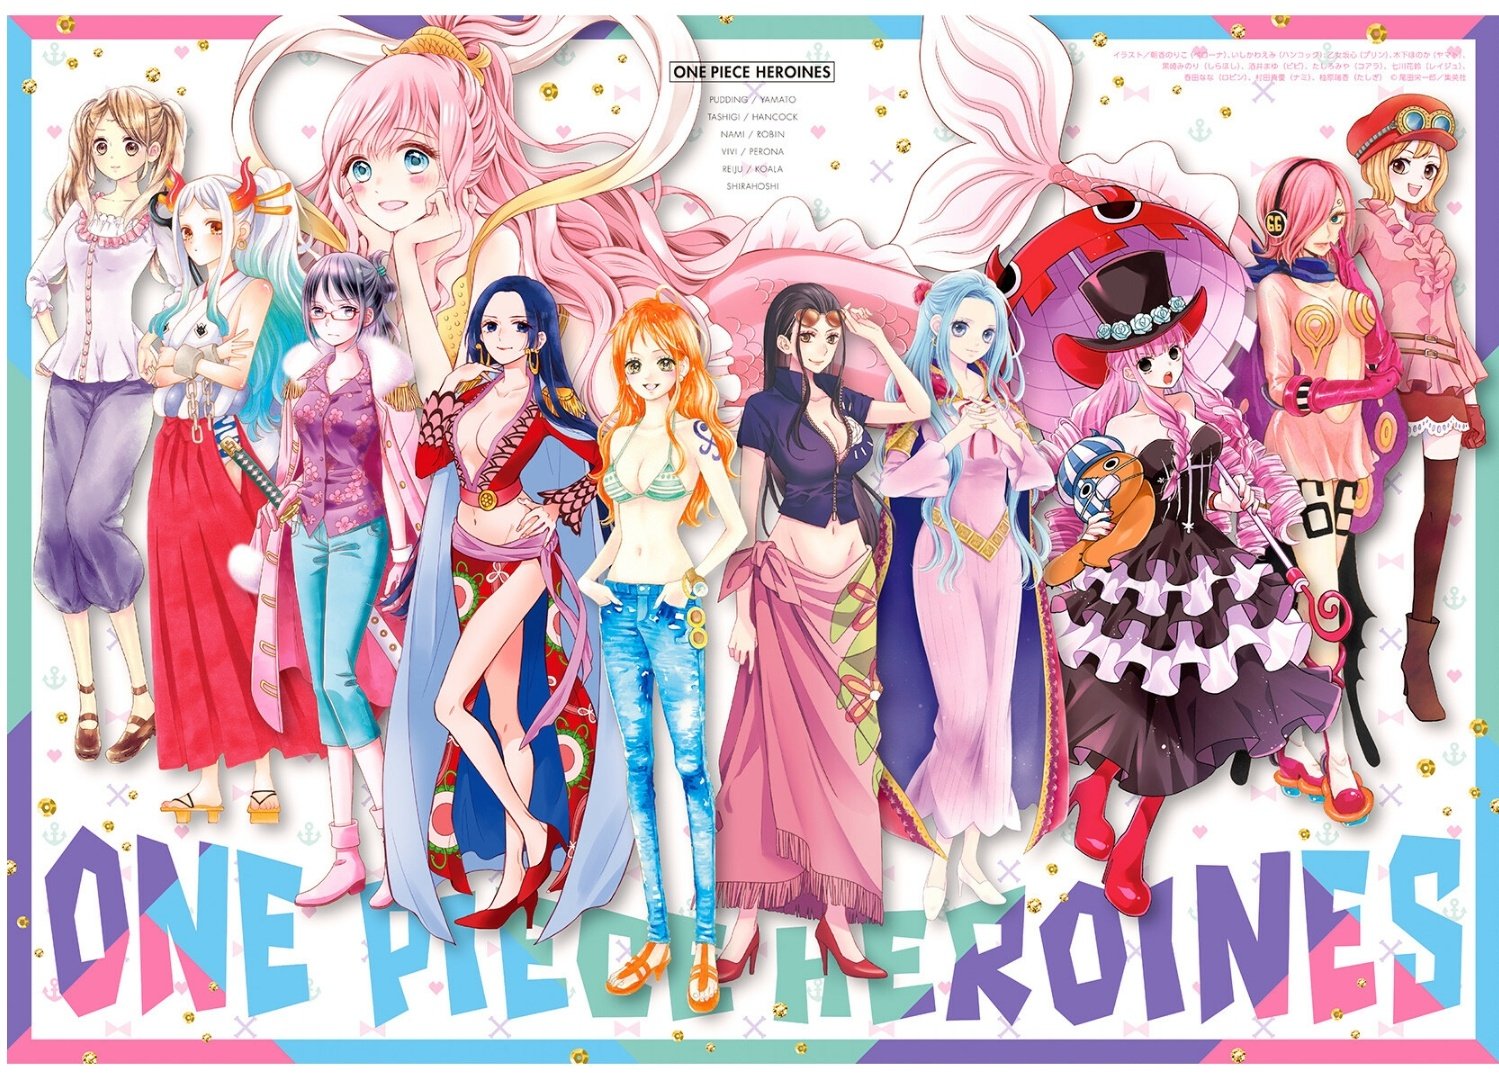 Cùng chiêm ngưỡng những hình ảnh đẹp của các nhân vật nữ trong tiểu thuyết One Piece. Những hình ảnh này làm nên sự kiện Heroines mà bạn đừng nên bỏ lỡ.